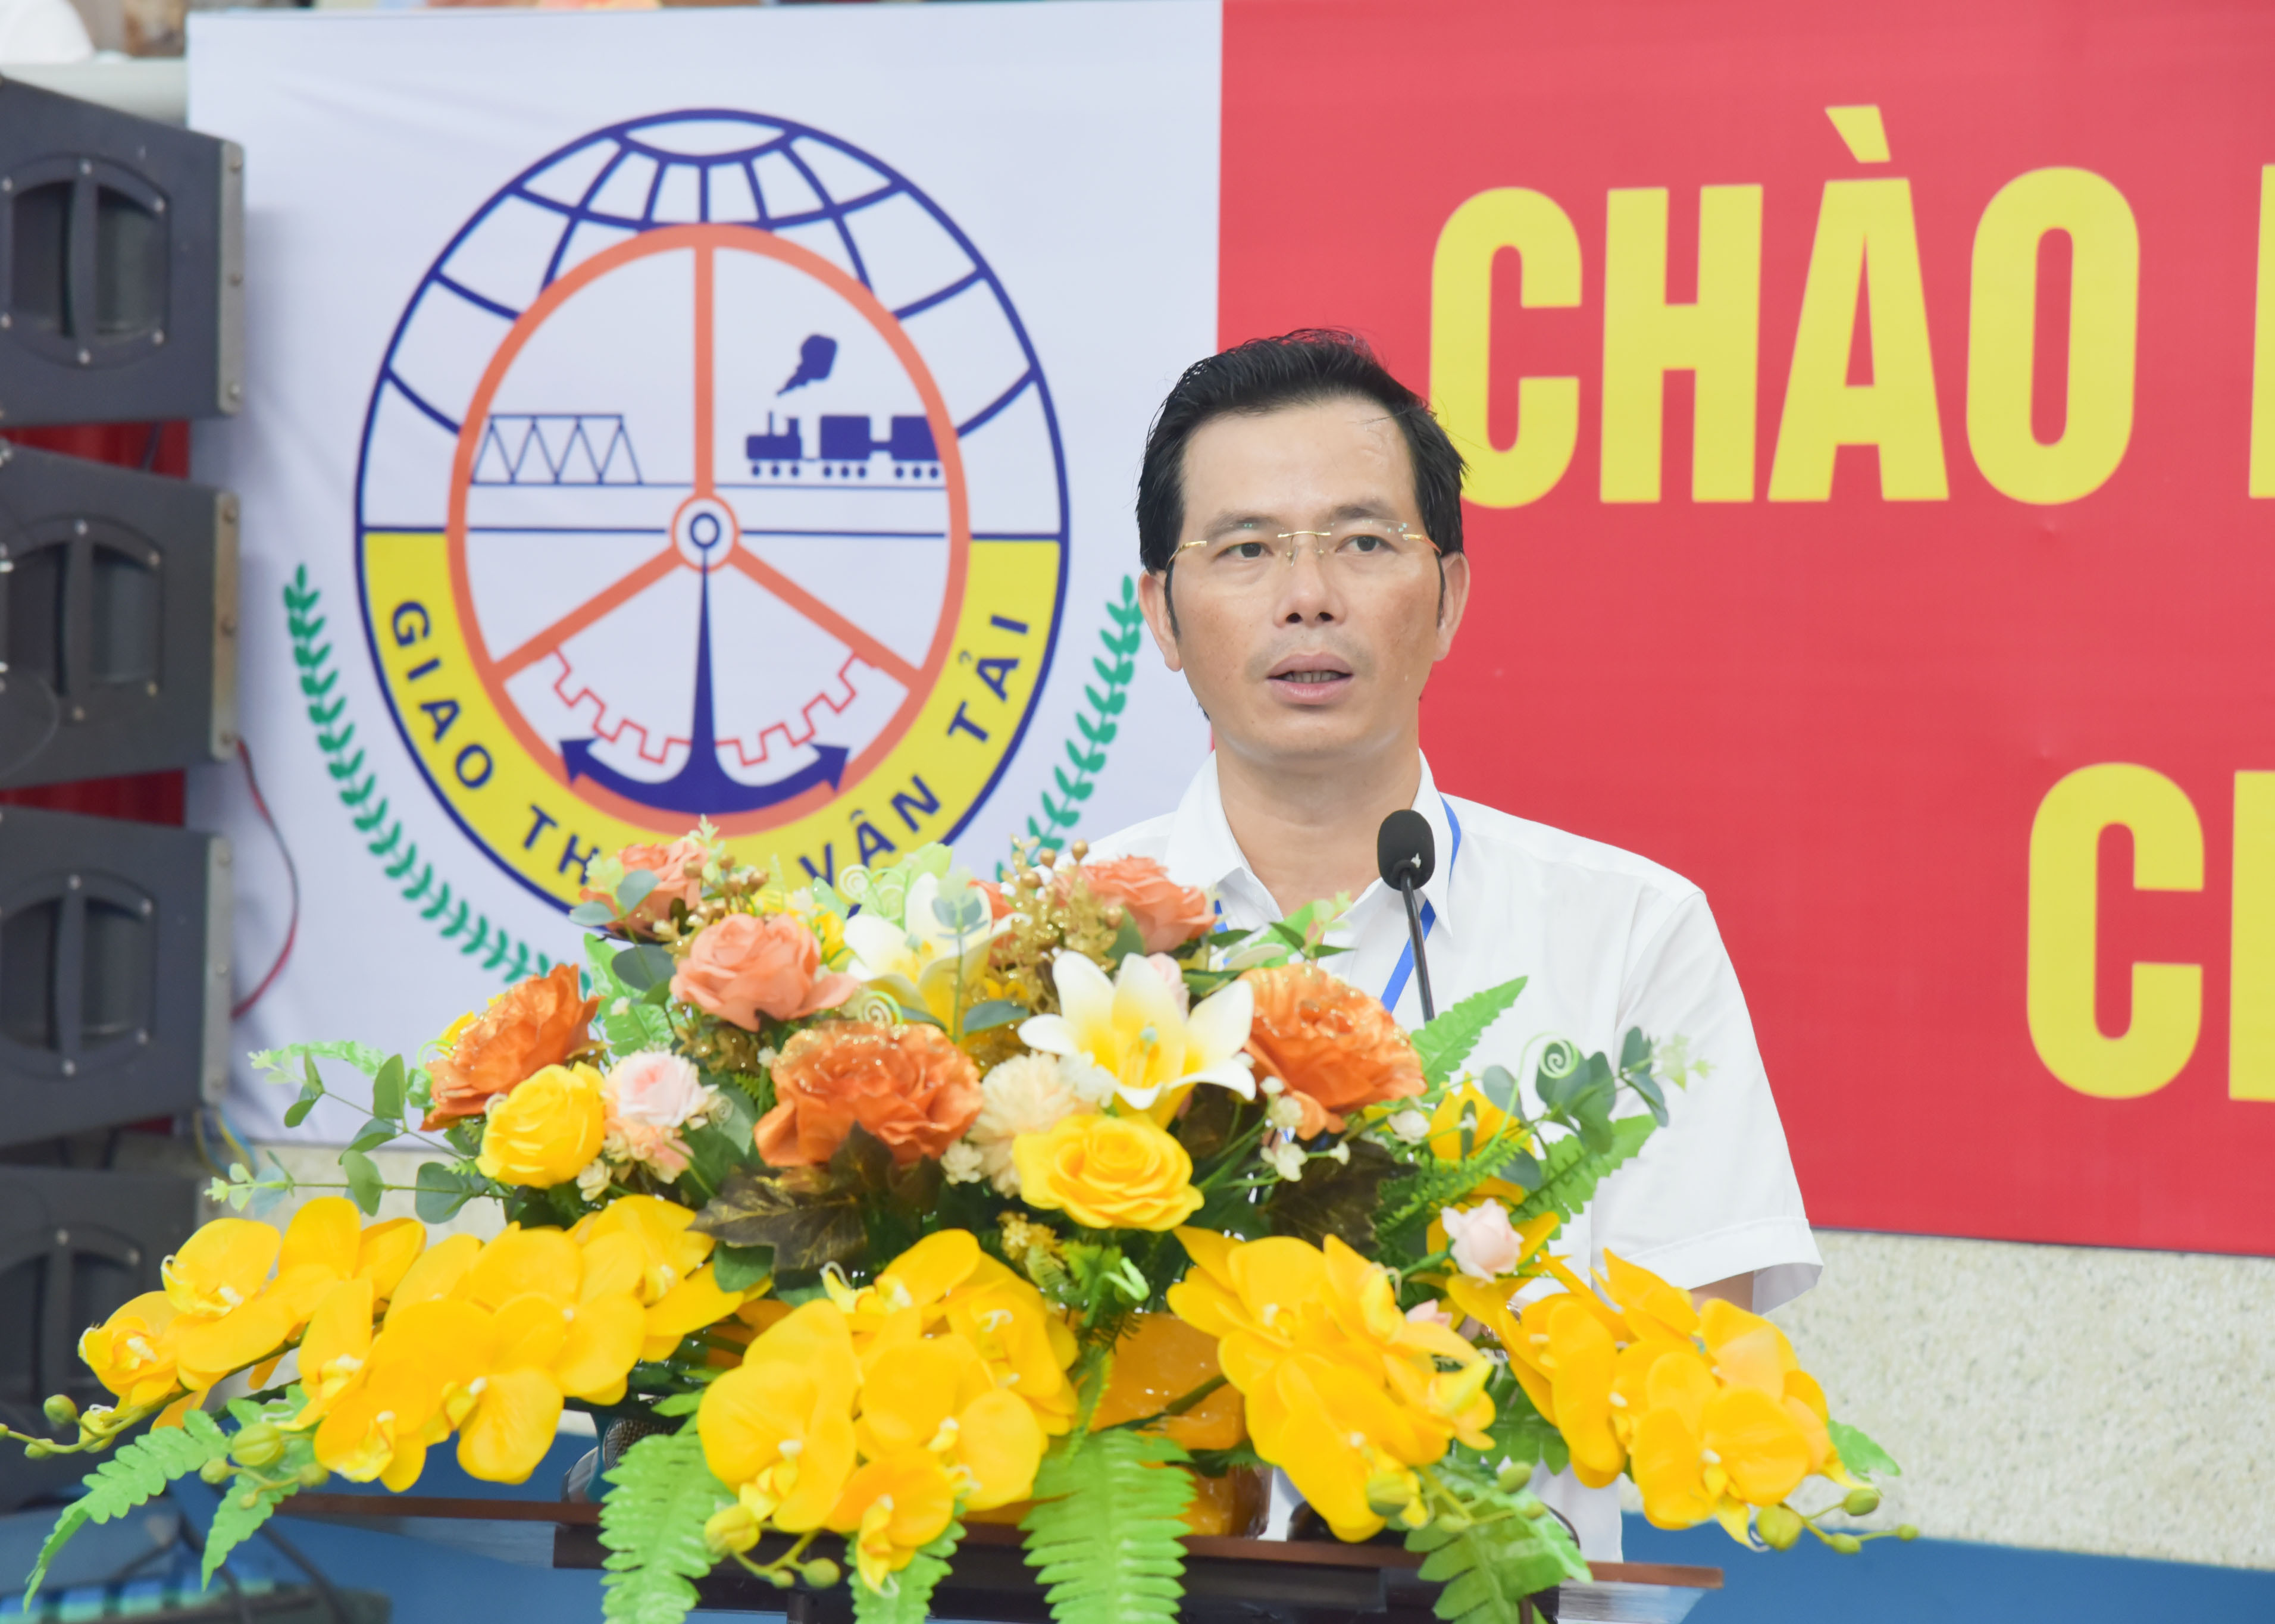 Đồng chí Nguyễn Văn Hải - Phó Giám đốc Sở Giao thông Vận tải phát biểu khai mạc Hội thao ngành Giao thông Vận tải năm 2022. Ảnh: Thanh Lê